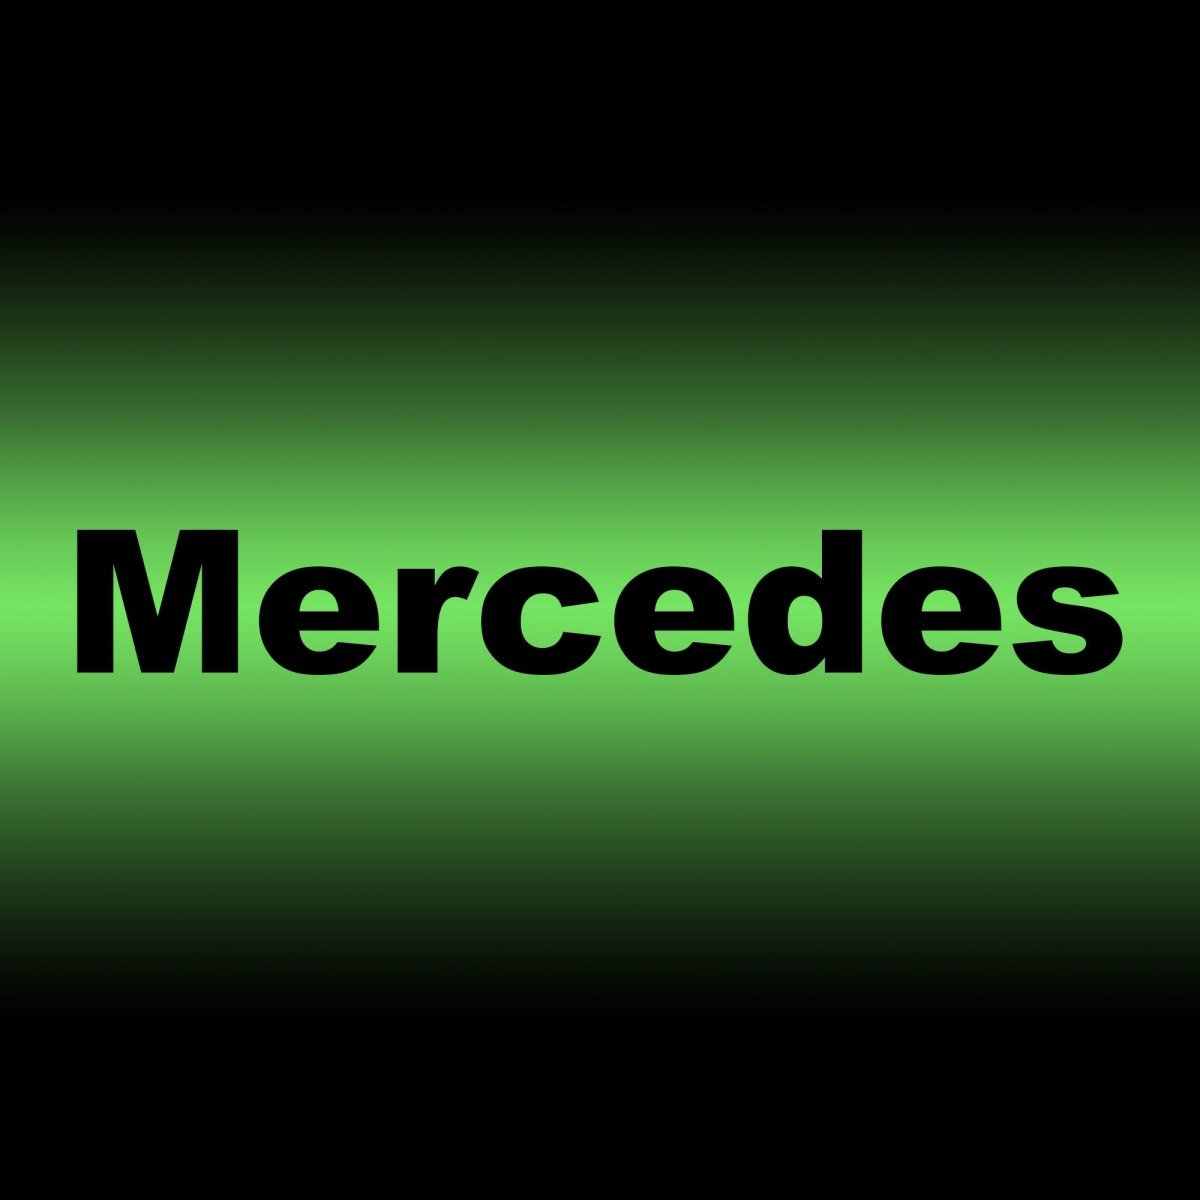 Rubber Tailored Car mats Mercedes - Green Flag Shop